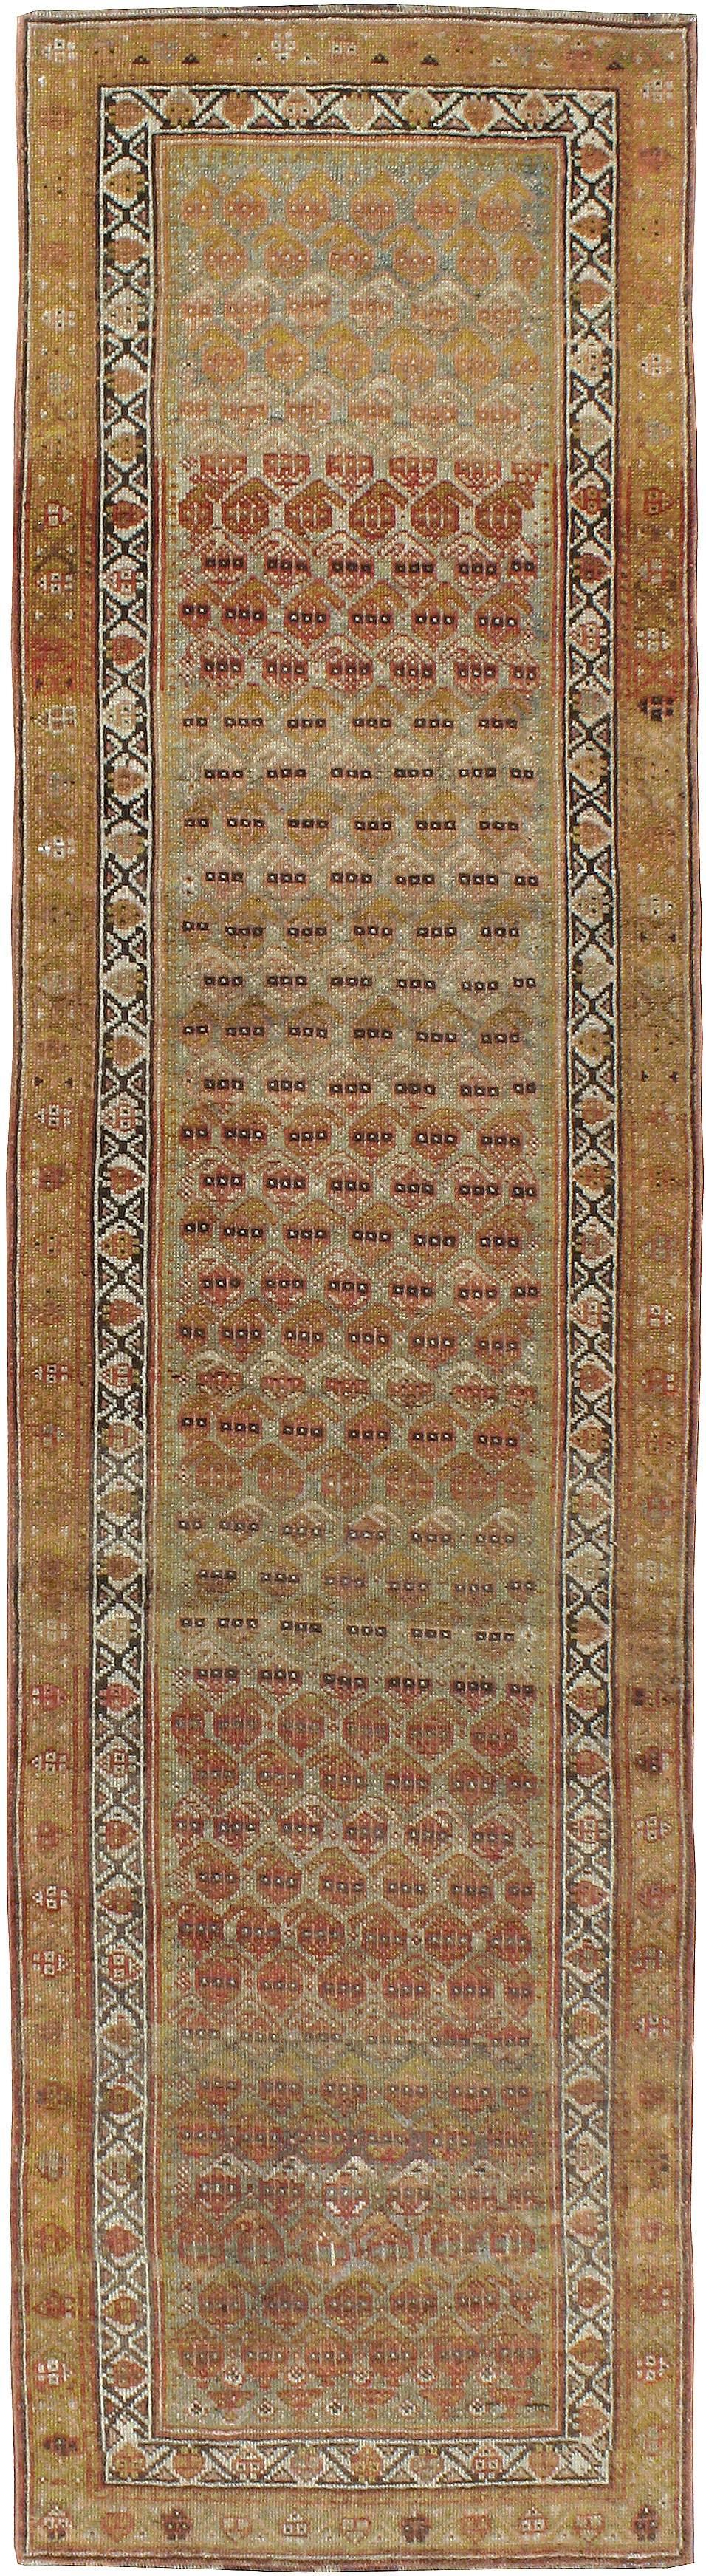 Un ancien tapis persan Malayer du premier quart du 20e siècle. Malayer est l'un des plus de 100 villages de tissage situés à l'extérieur de Hamadan, dans le nord-ouest de l'Iran. Les motifs des tapis Malayer sont principalement géométriques et un